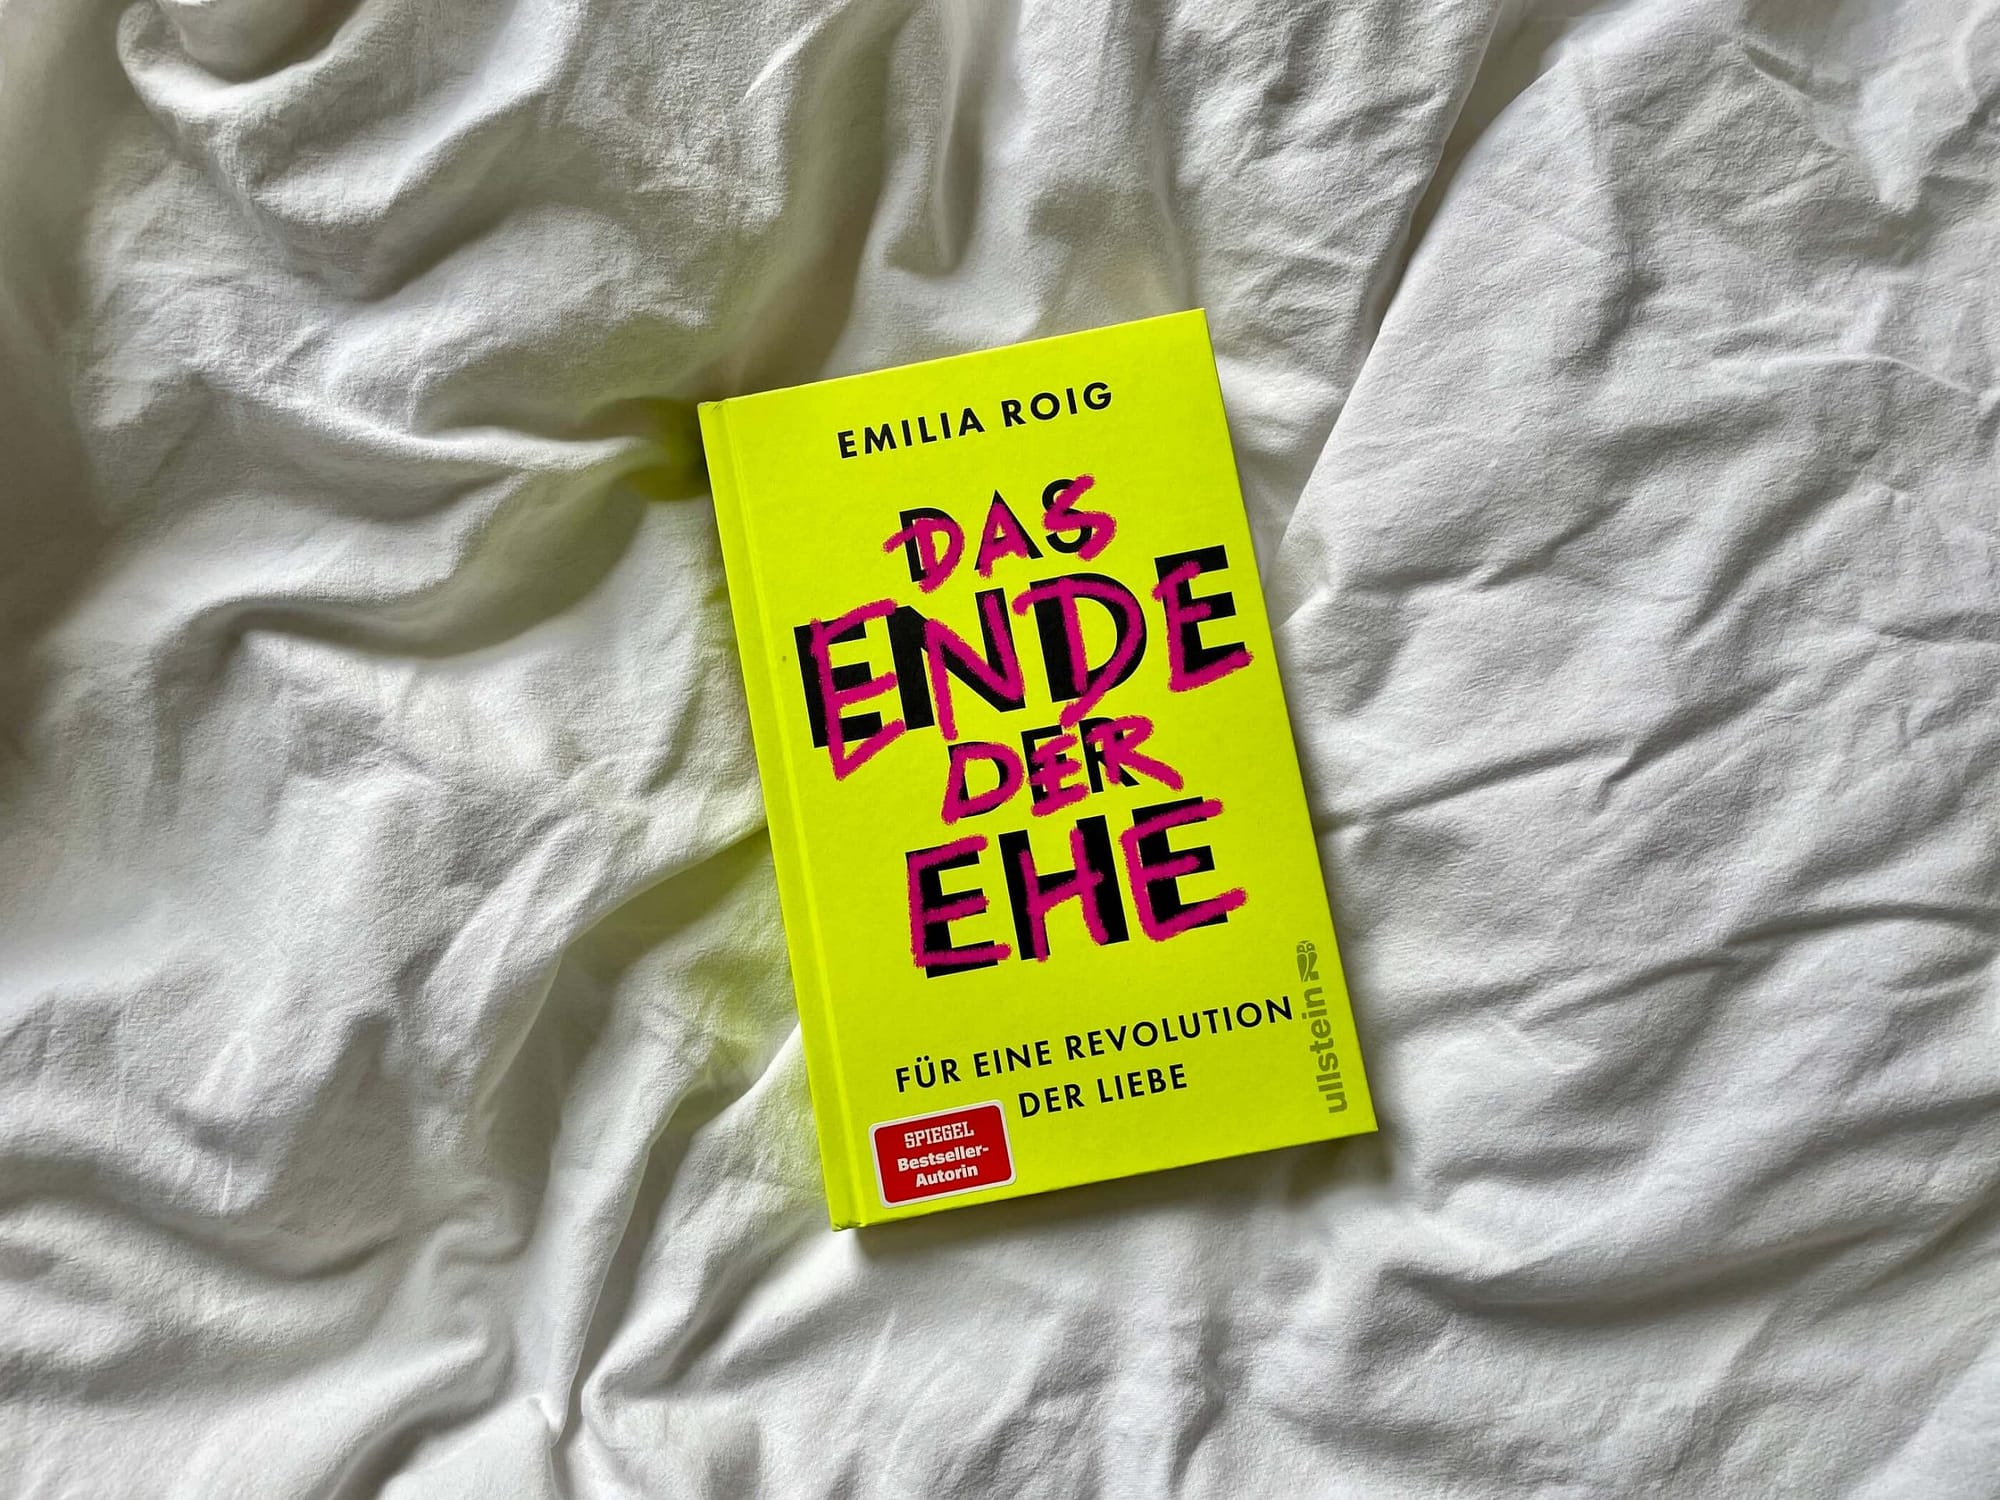 Das Buch "Das Ende der Ehe" von Emilia Roig liegt auf einem weißen Bettlaken